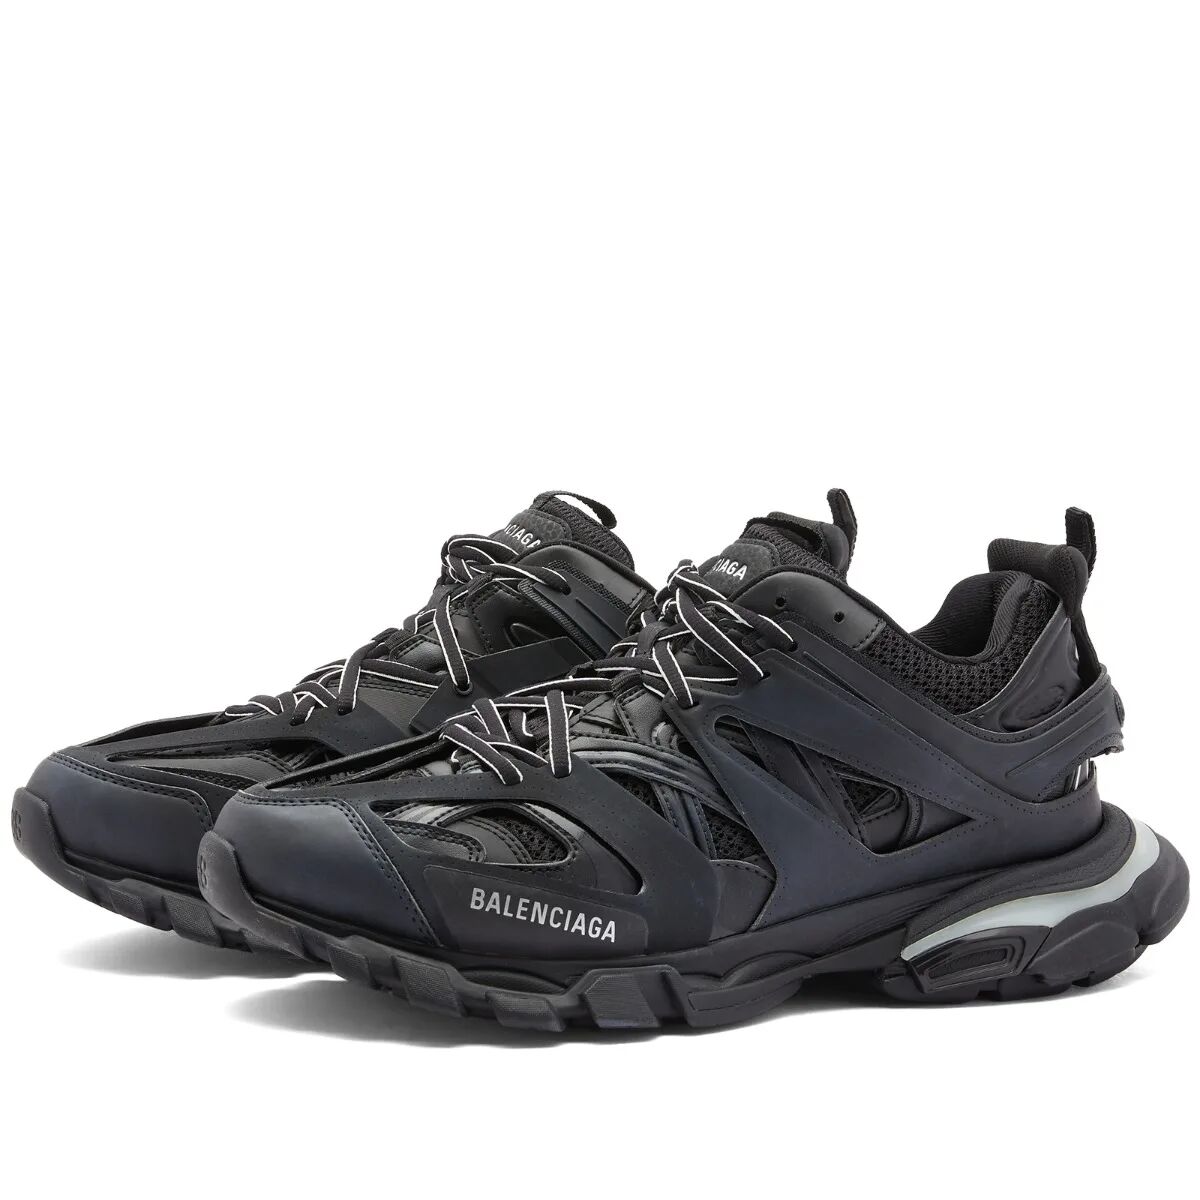 Balenciaga Men's Led Track Sneakers in Black, Size UK 7